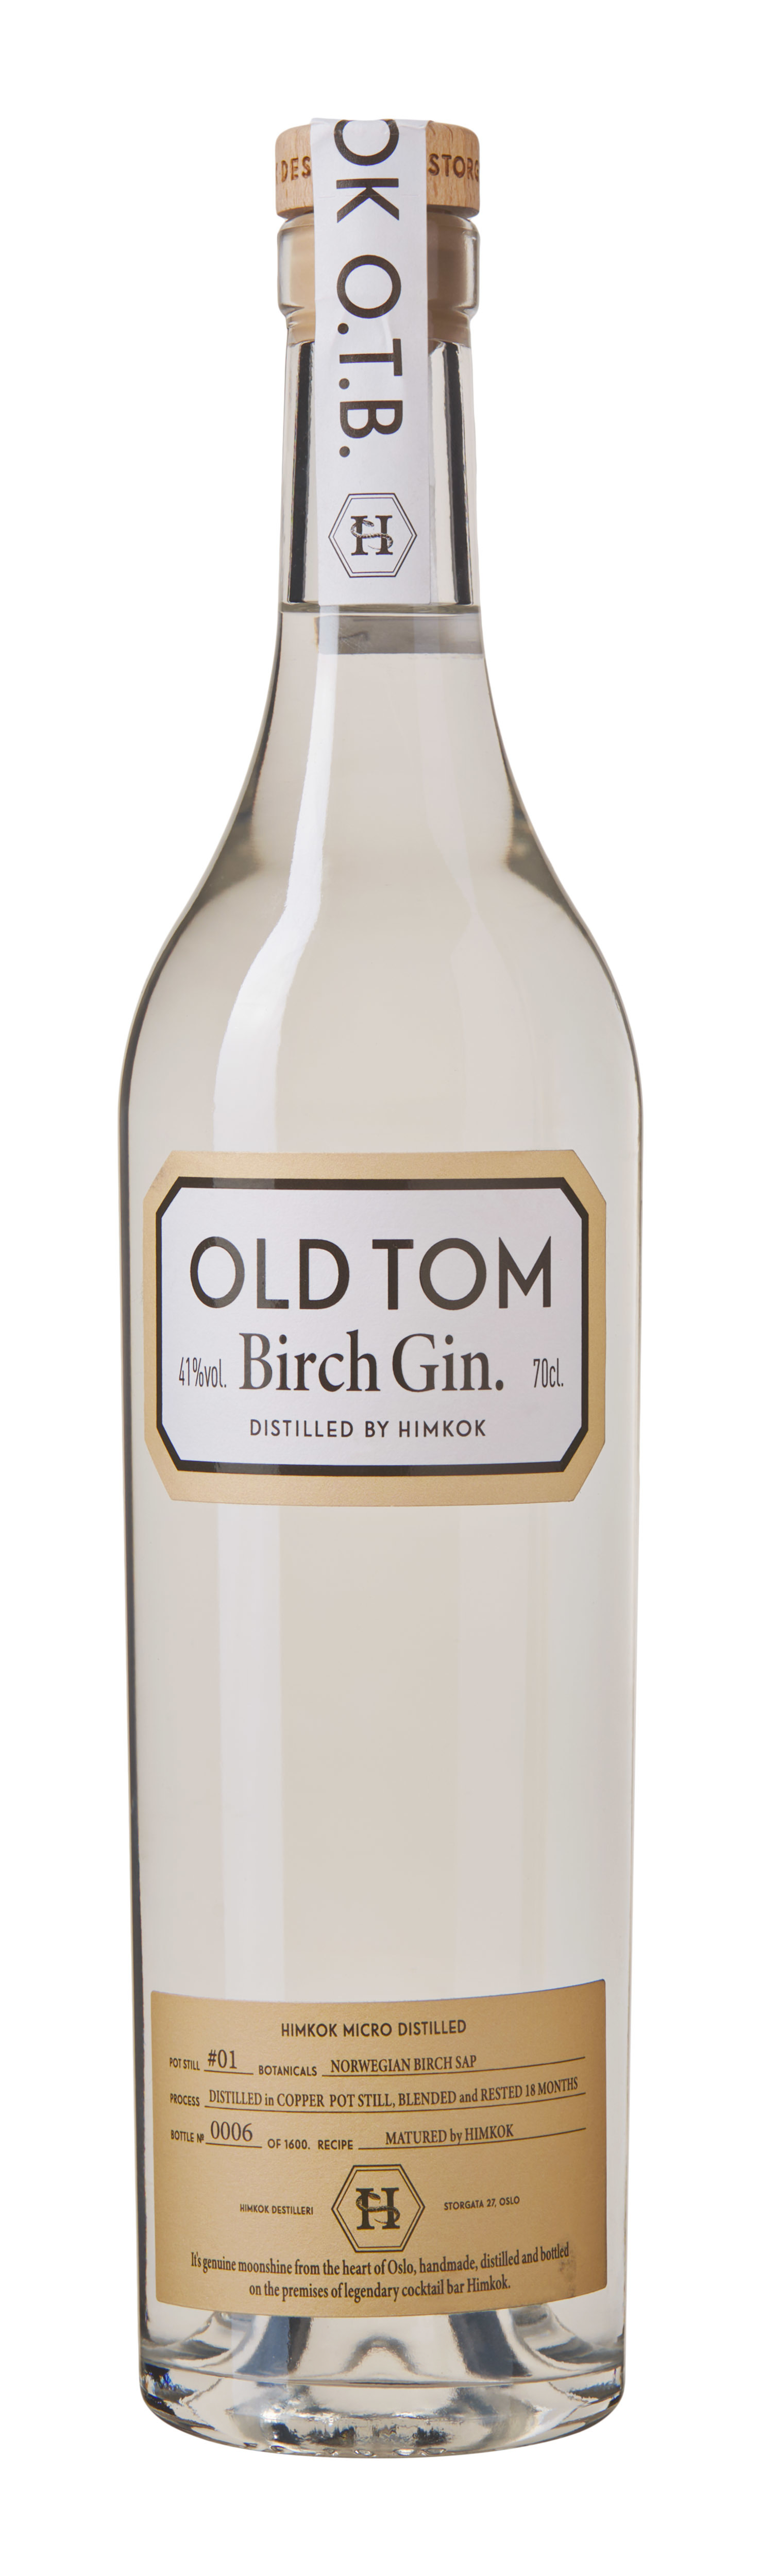 Himkok Old Tom Birch Gin